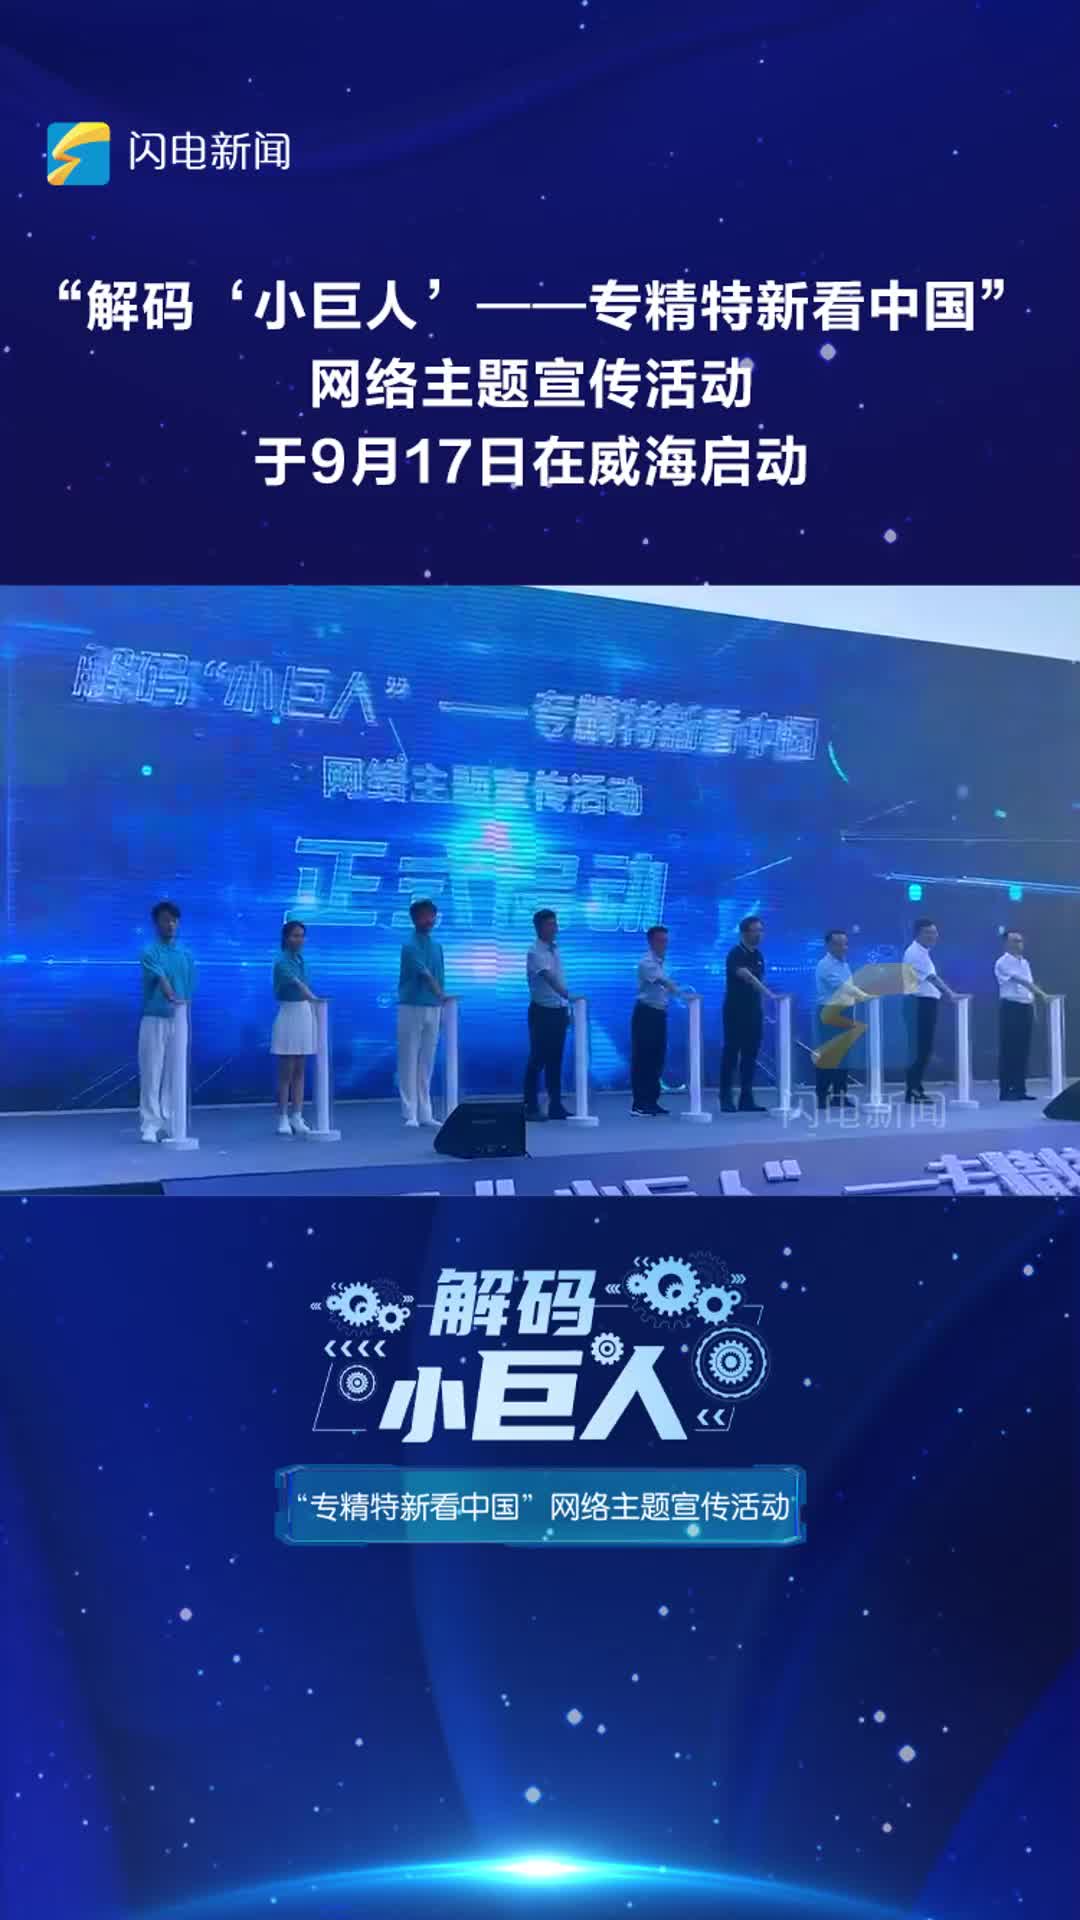 “解码‘小巨人’——专精特新看中国”网络主题宣传活动于9月17日在威海启动